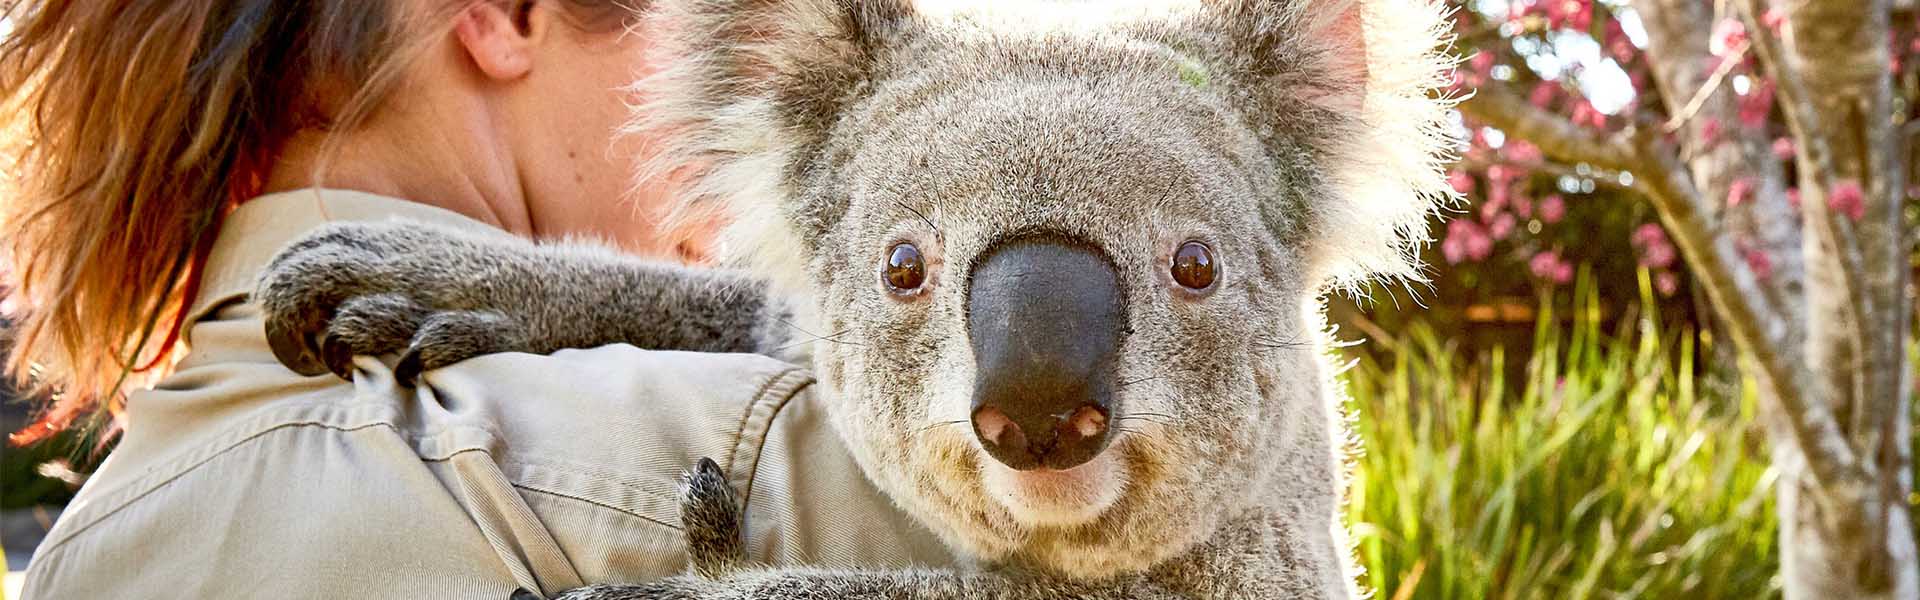 Woman hugging Koala in Australia